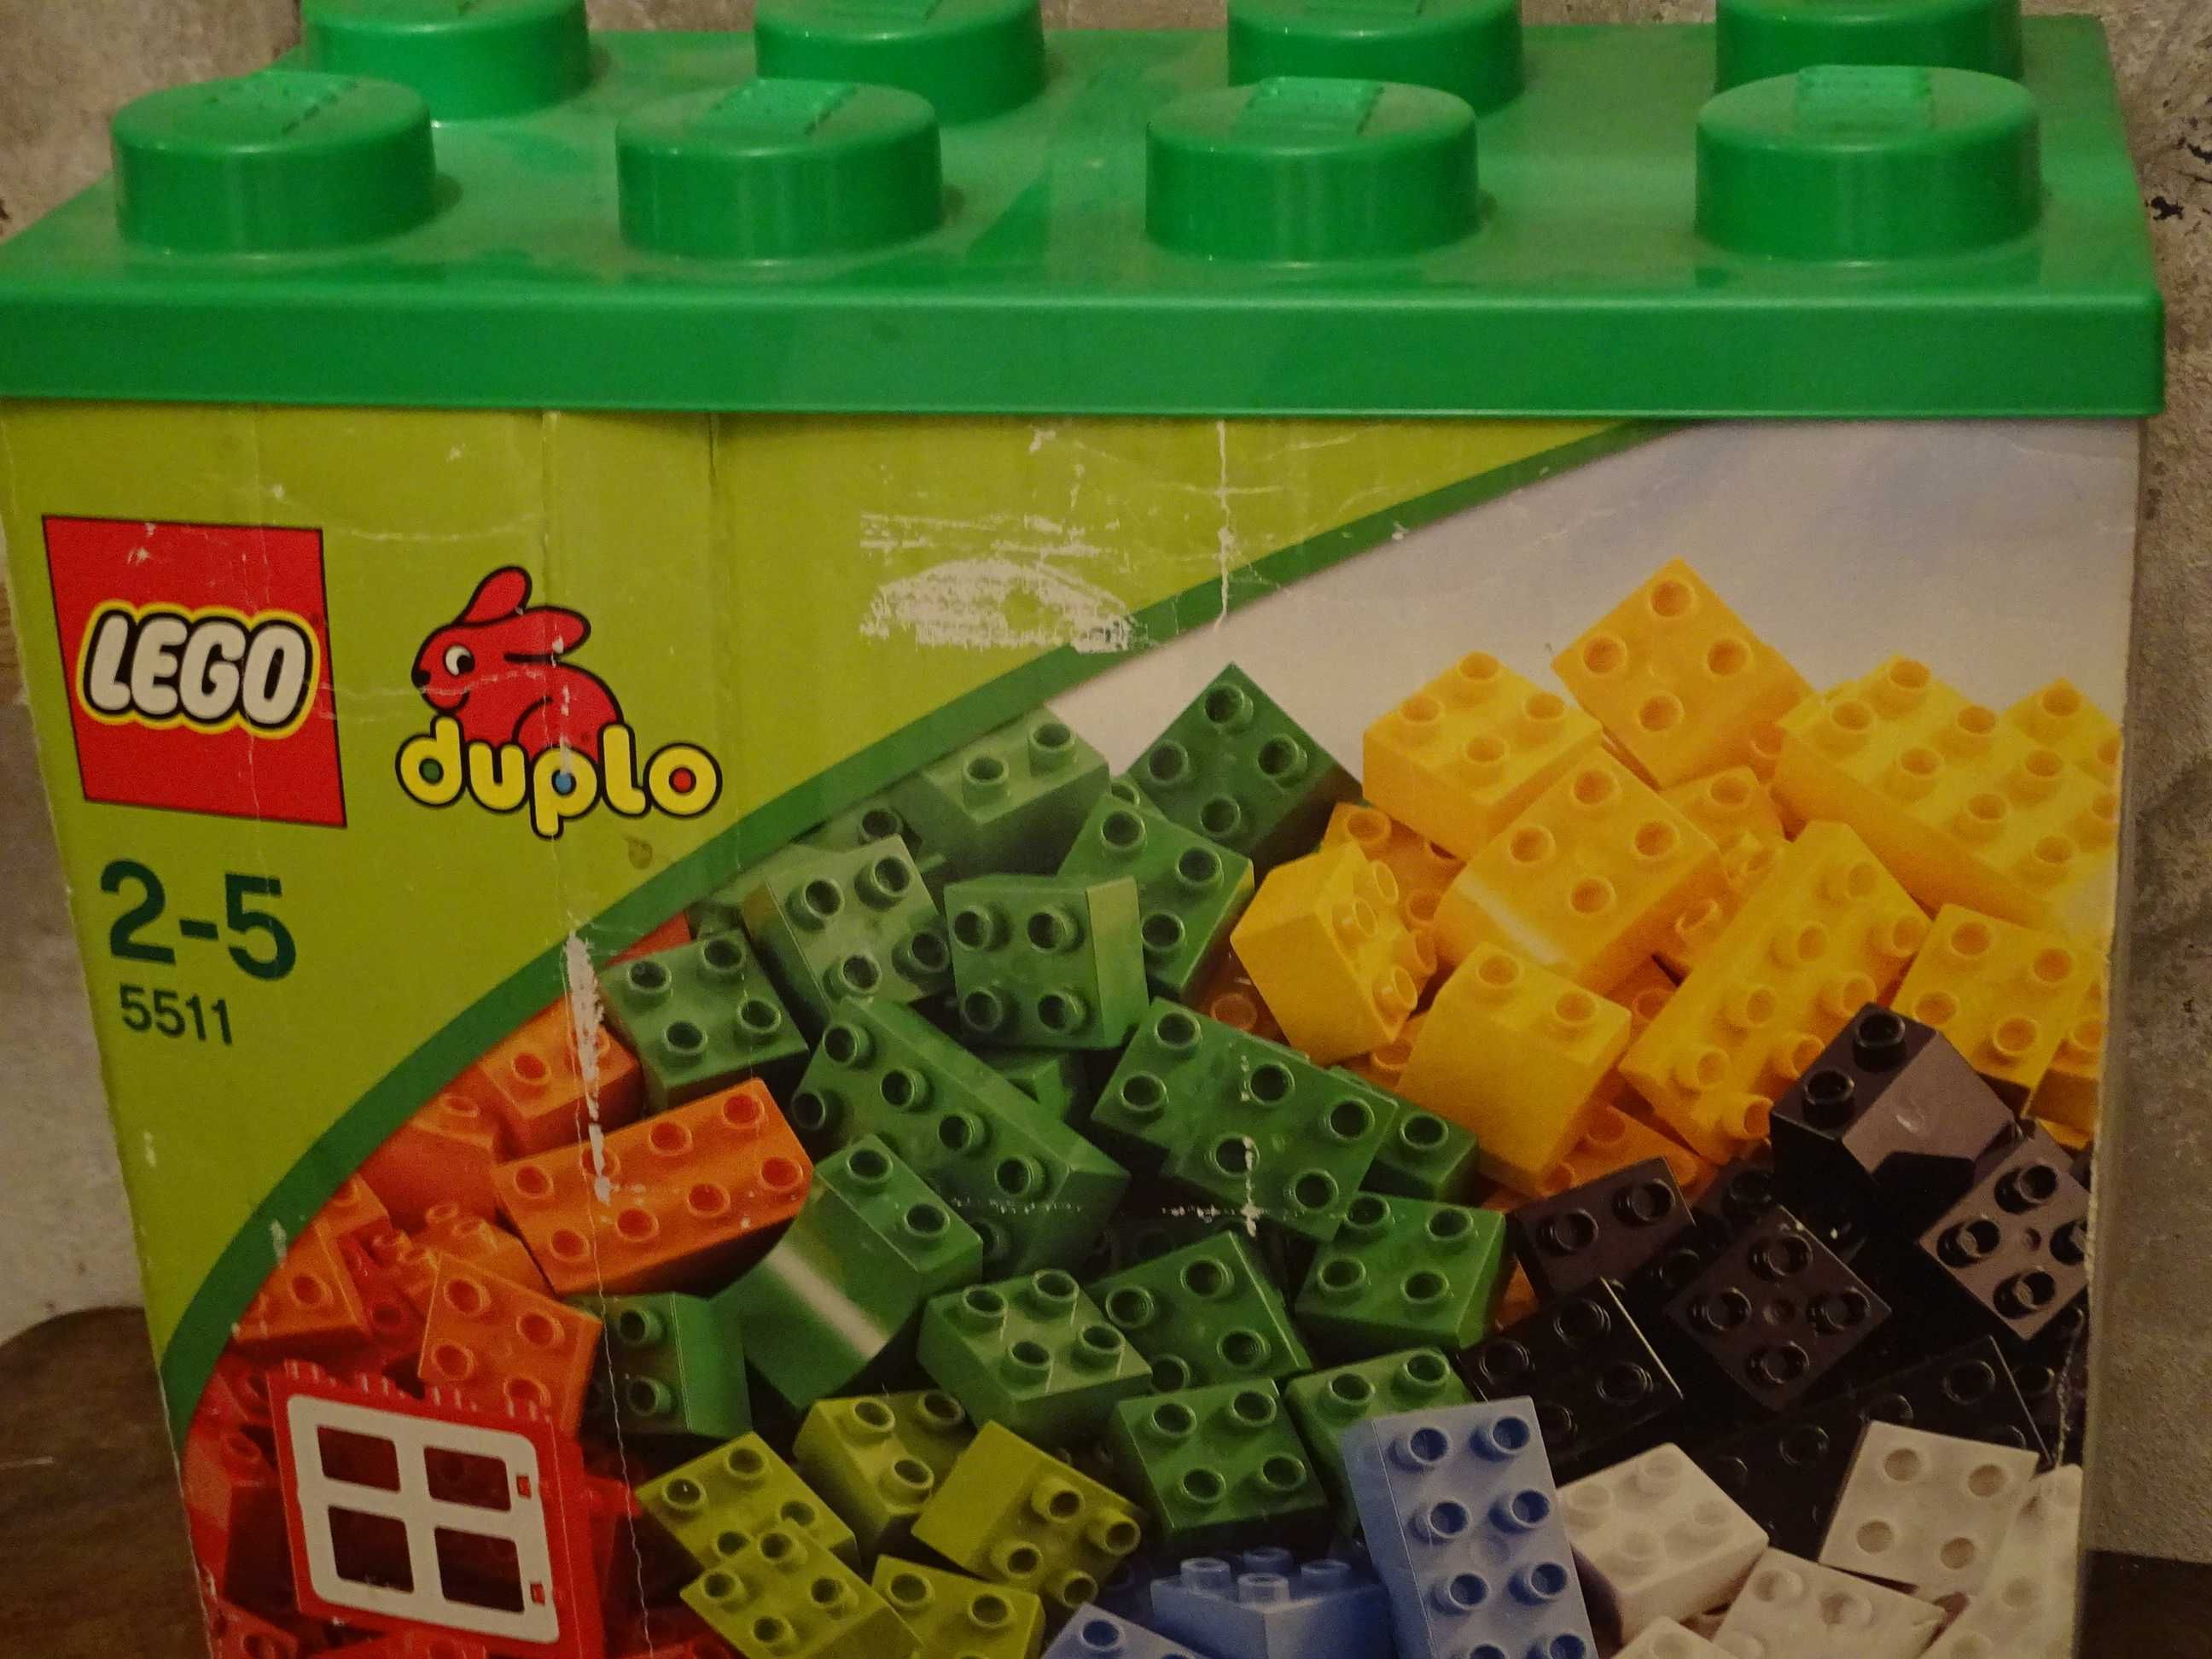 Lego Duplo 5511-XXL-200szt. Kraków Krowodrza • OLX.pl